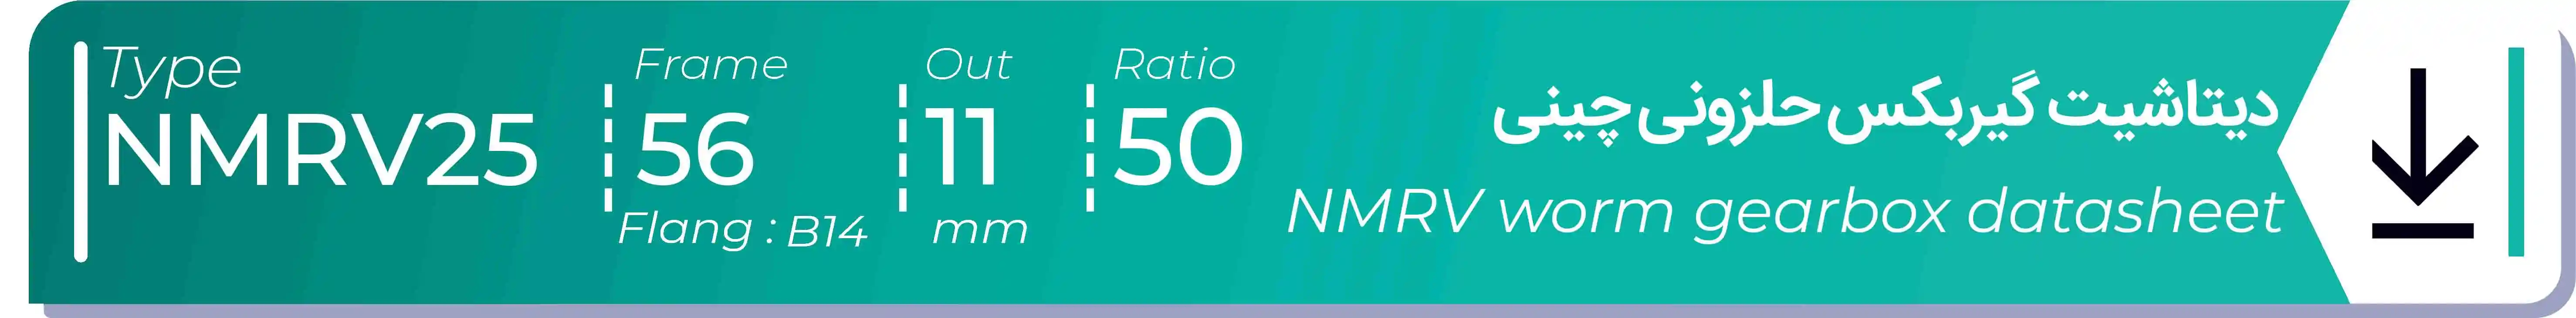  دیتاشیت و مشخصات فنی گیربکس حلزونی چینی   NMRV25  -  با خروجی 11- میلی متر و نسبت50